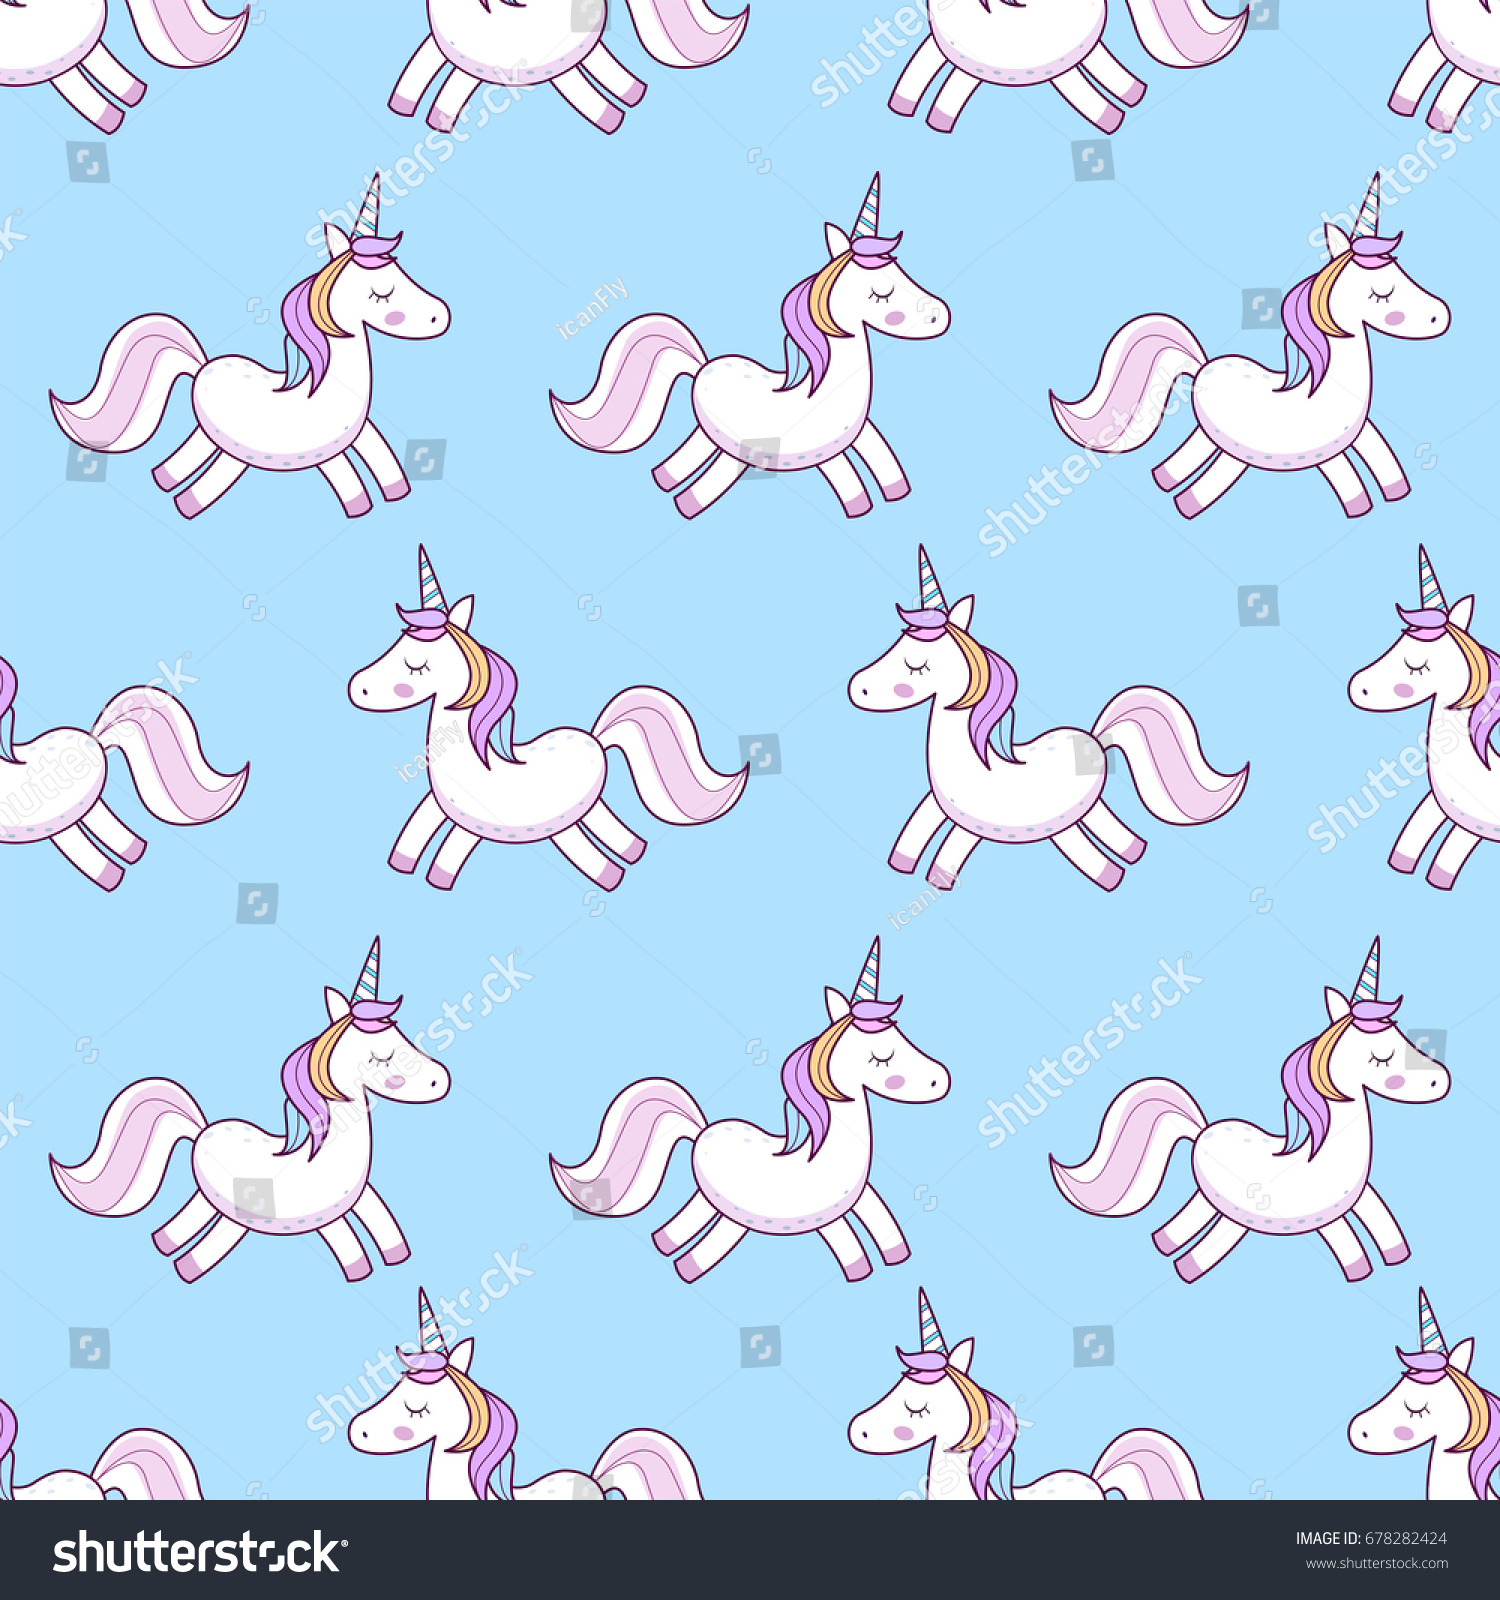 Download Unicorn Vector Illustration Seamless Pattern Rainbow Stock ...